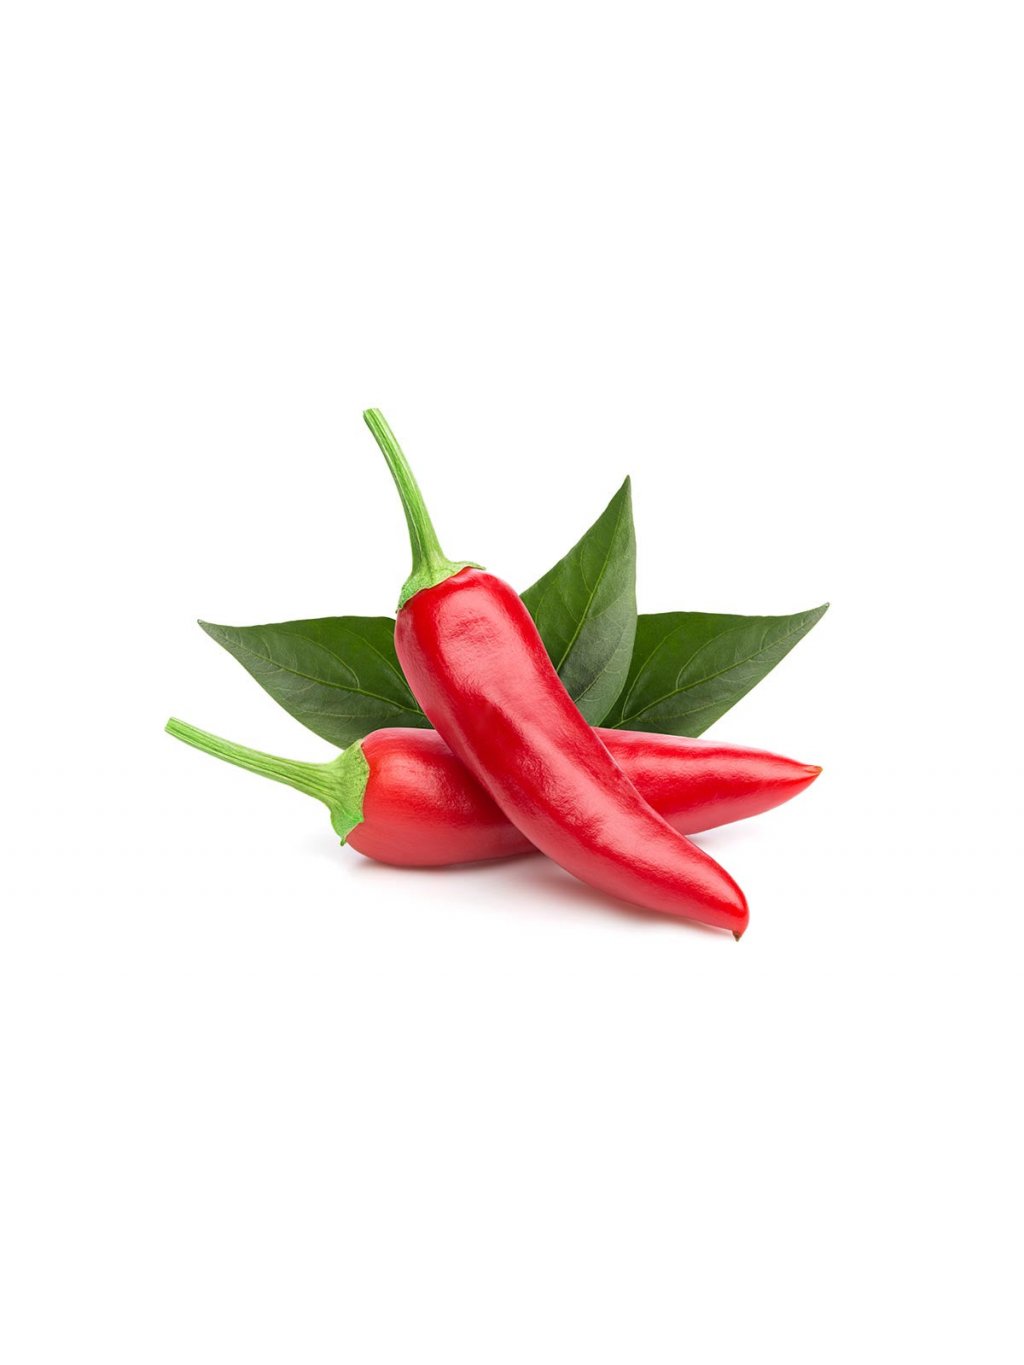 Chili Pepper plant 1200x960 e5694417 35fa 4b98 87e5 dcbd1f980d86 1200x 1